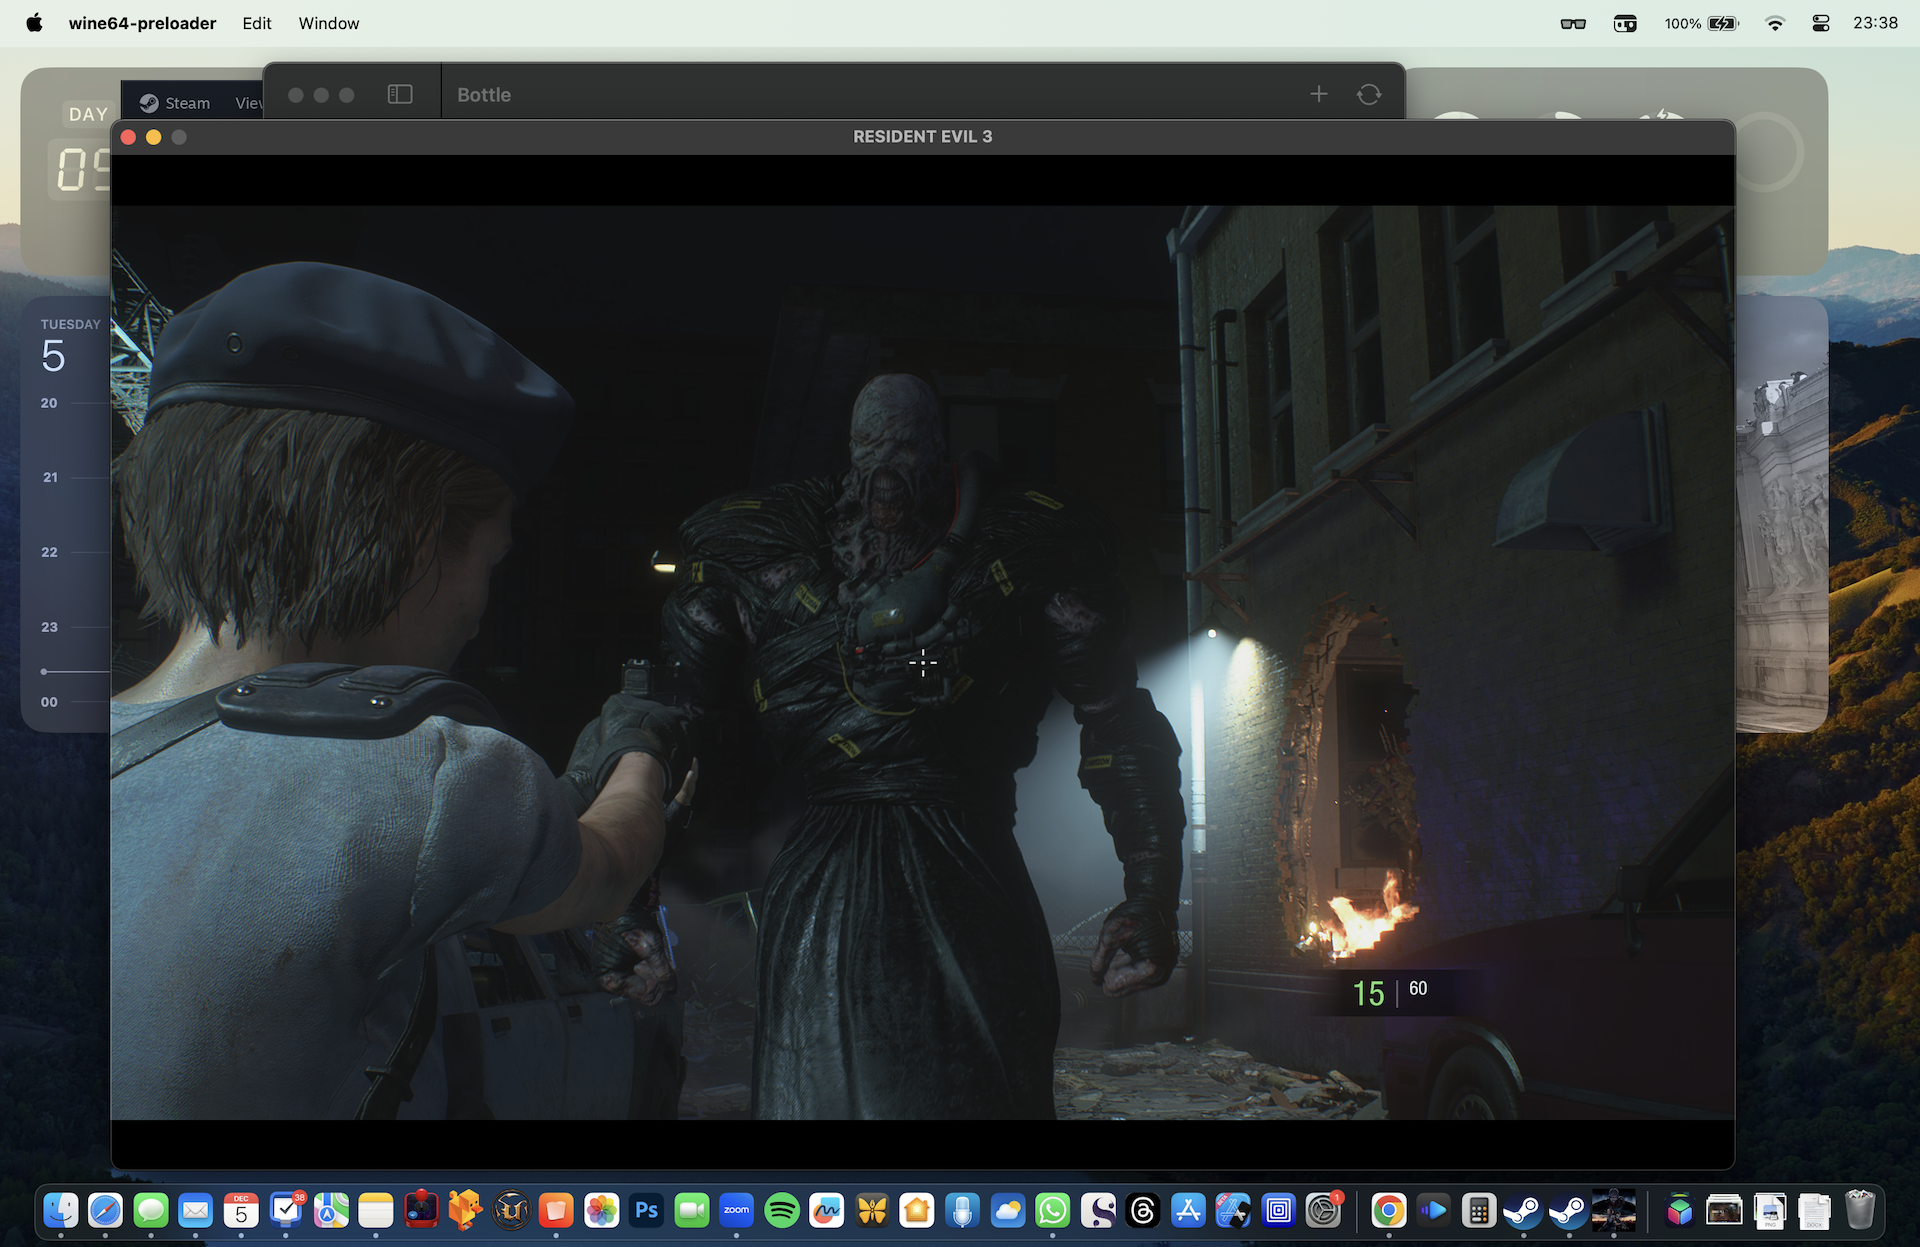 Resident Evil 3 running on Whisky on macOS